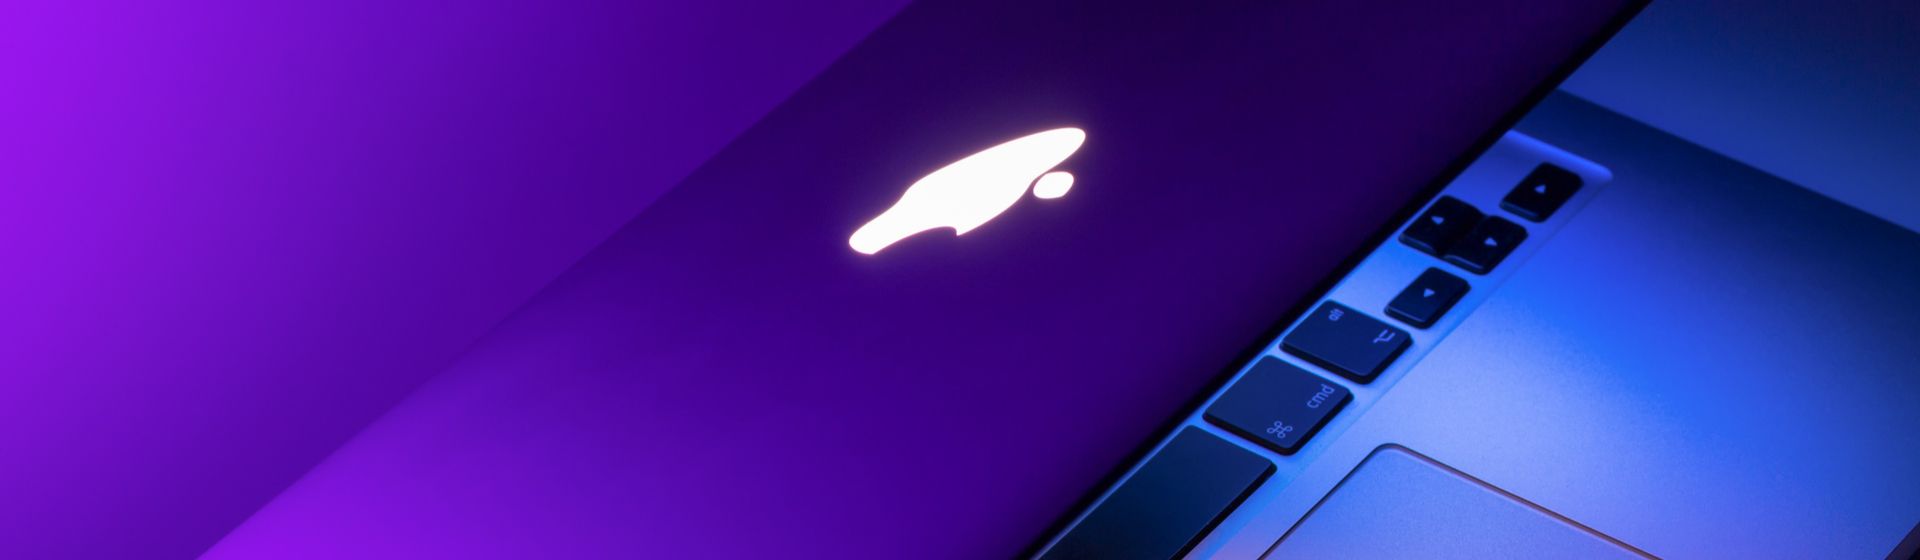 MacBook Air de 2020 vale a pena? Análise do novo notebook da Apple